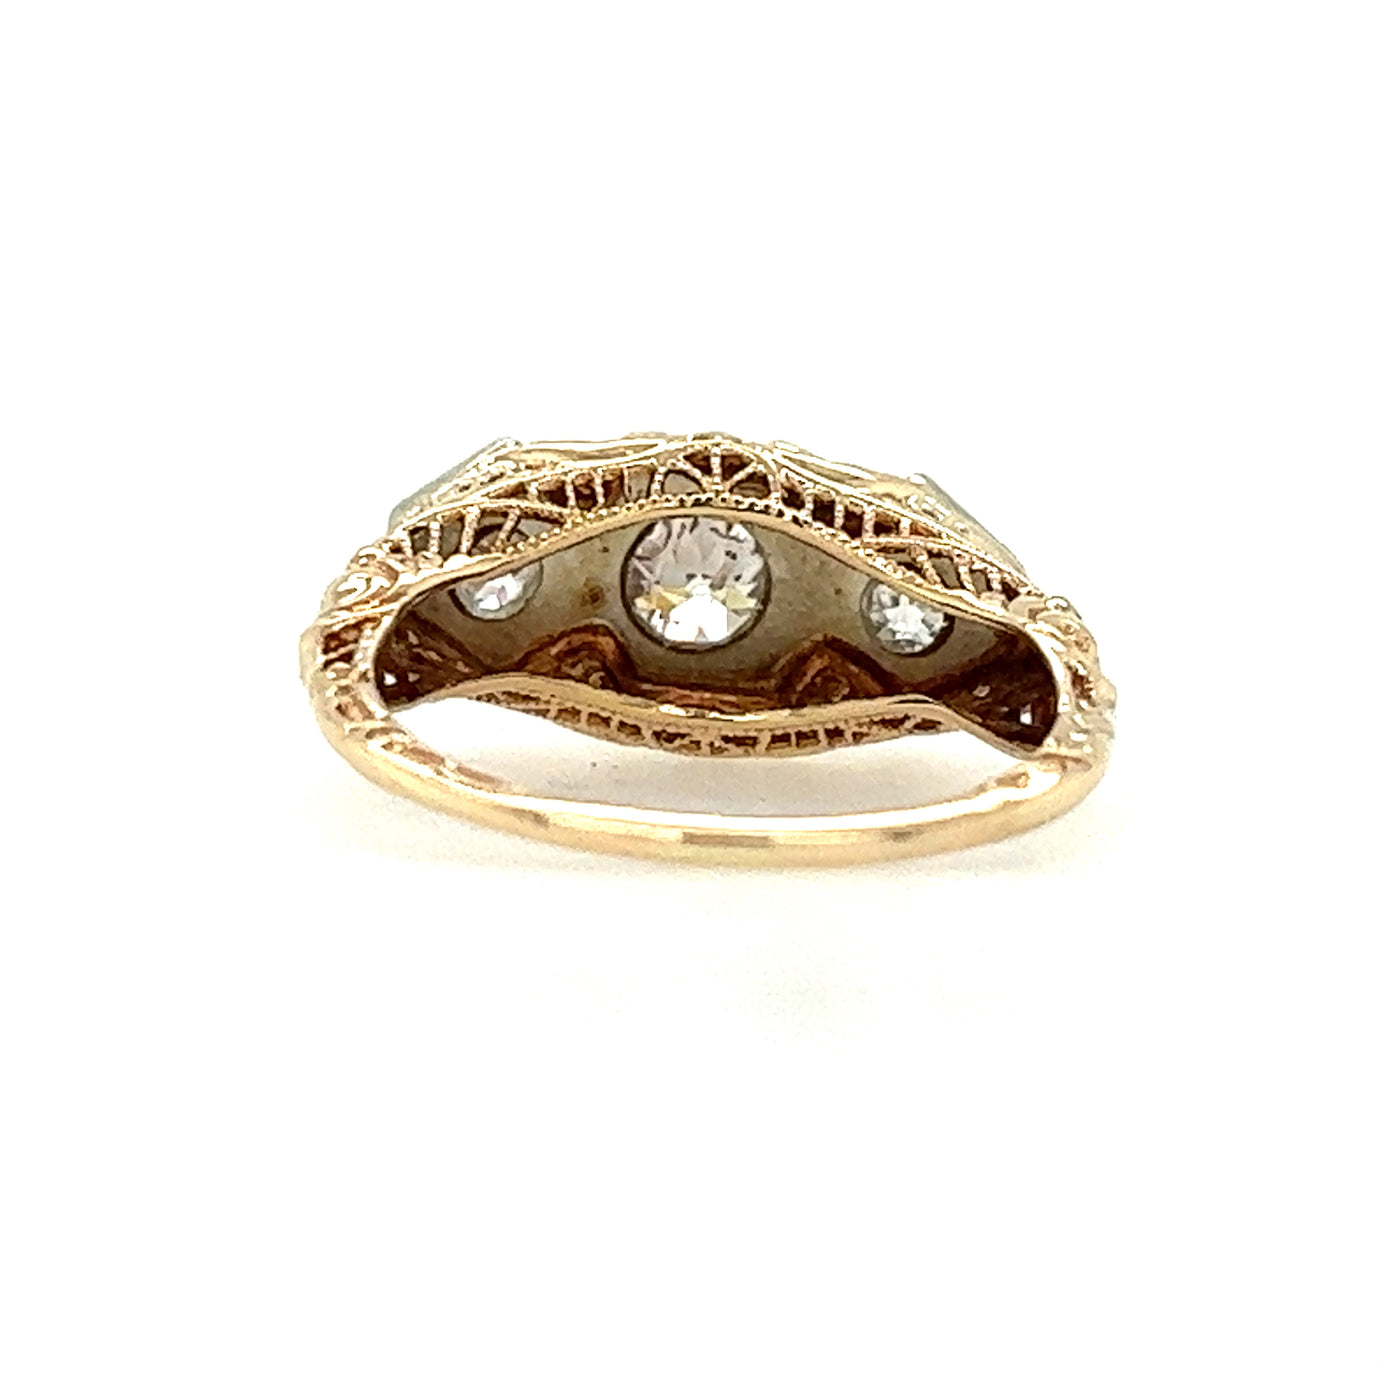 Estate14 Karat Yellow Gold Vintage Inspired Diamond Ring